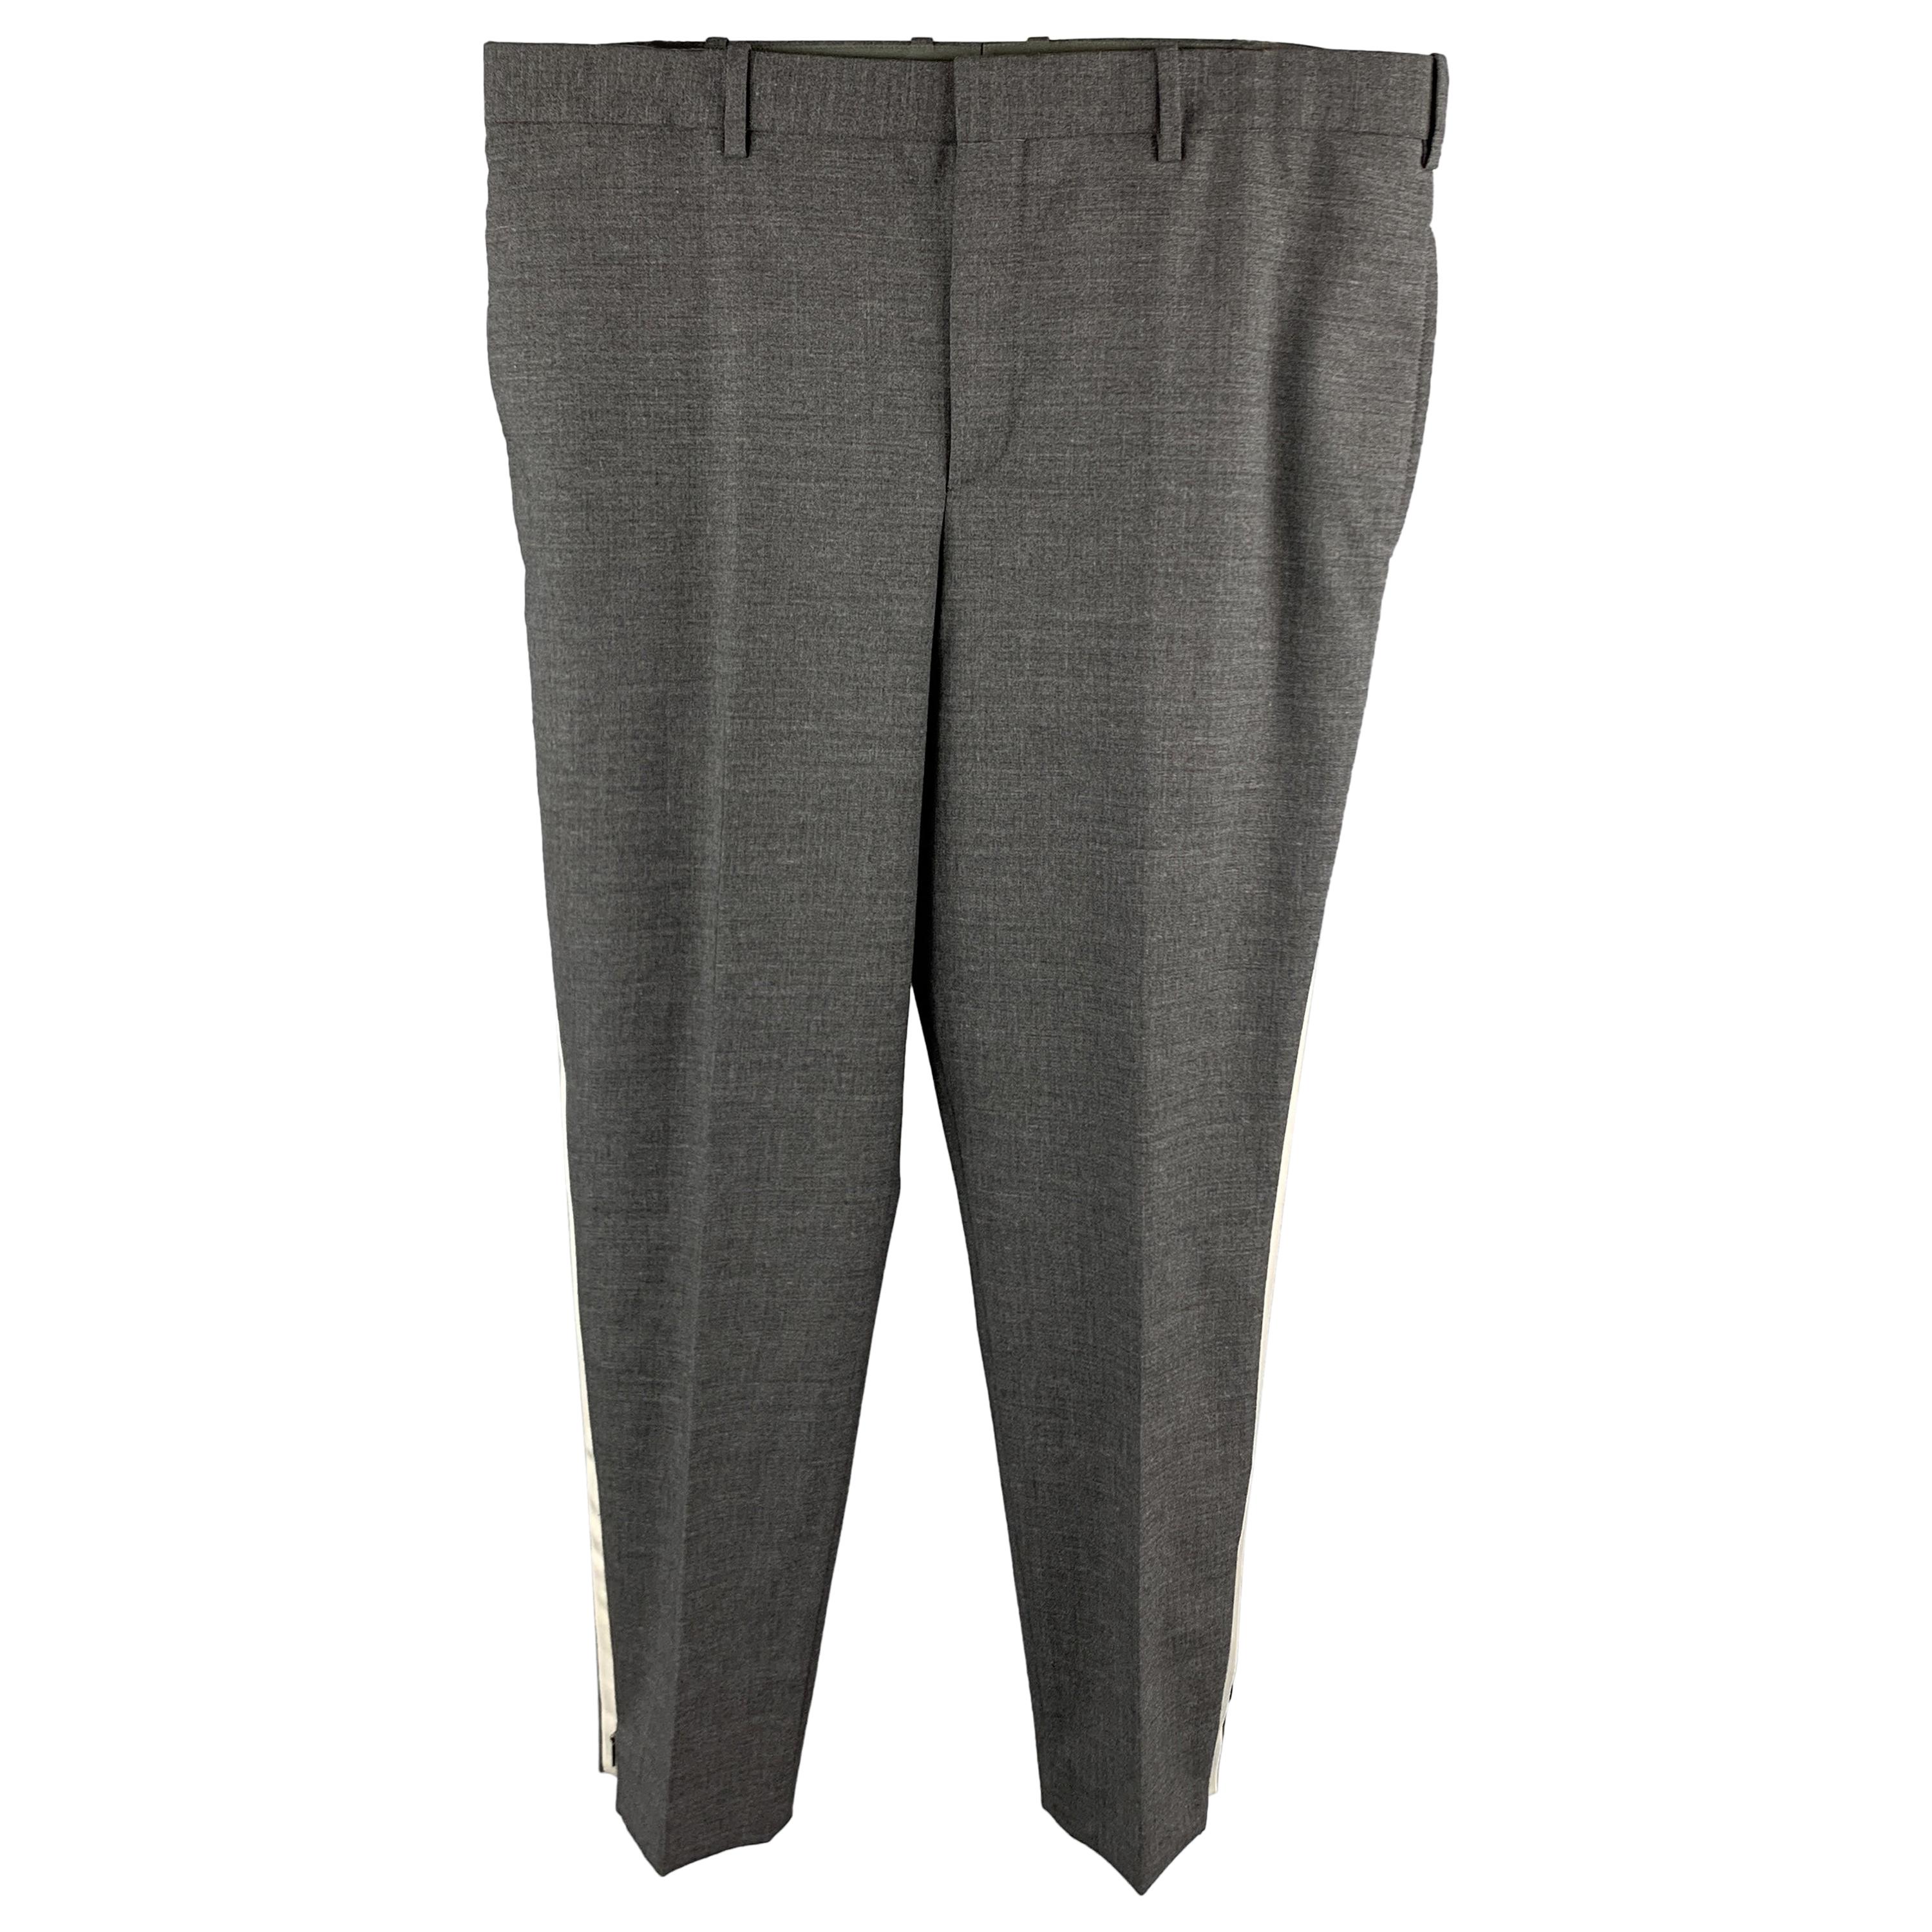 NEIL BARRETT Size 36 Dark Gray Solid Wool Blend Tuxedo Dress Pants